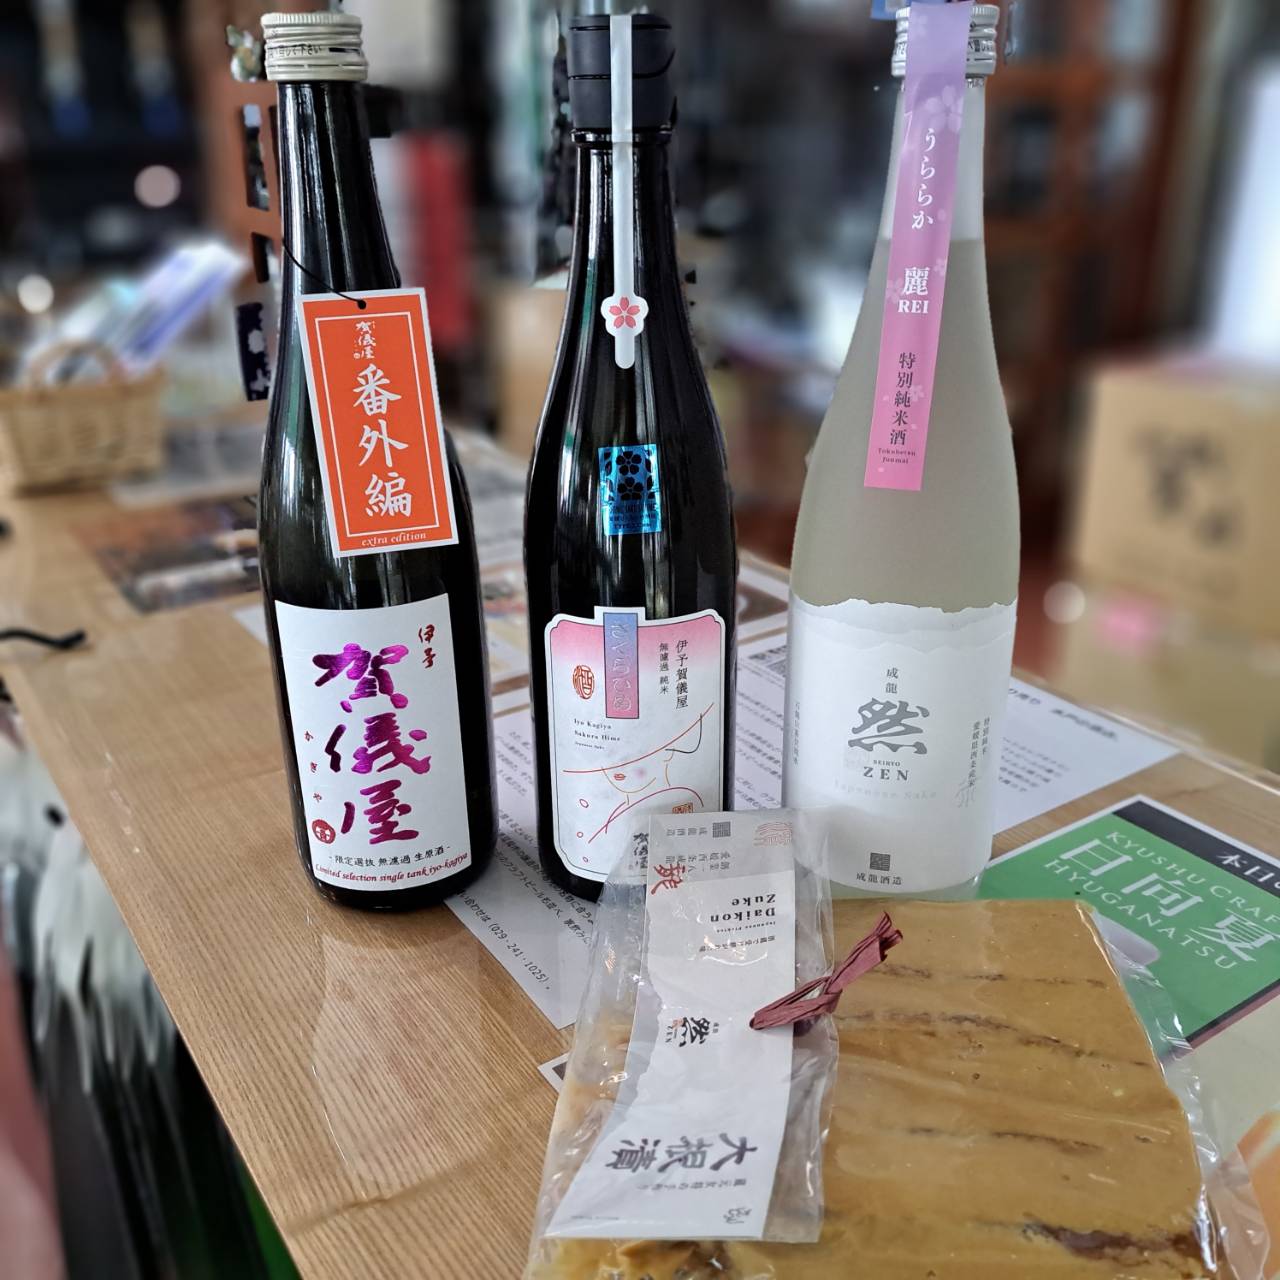 『愛媛県の伊予賀儀屋さんから、春の限定酒と女将の手作り漬物が入荷しました』